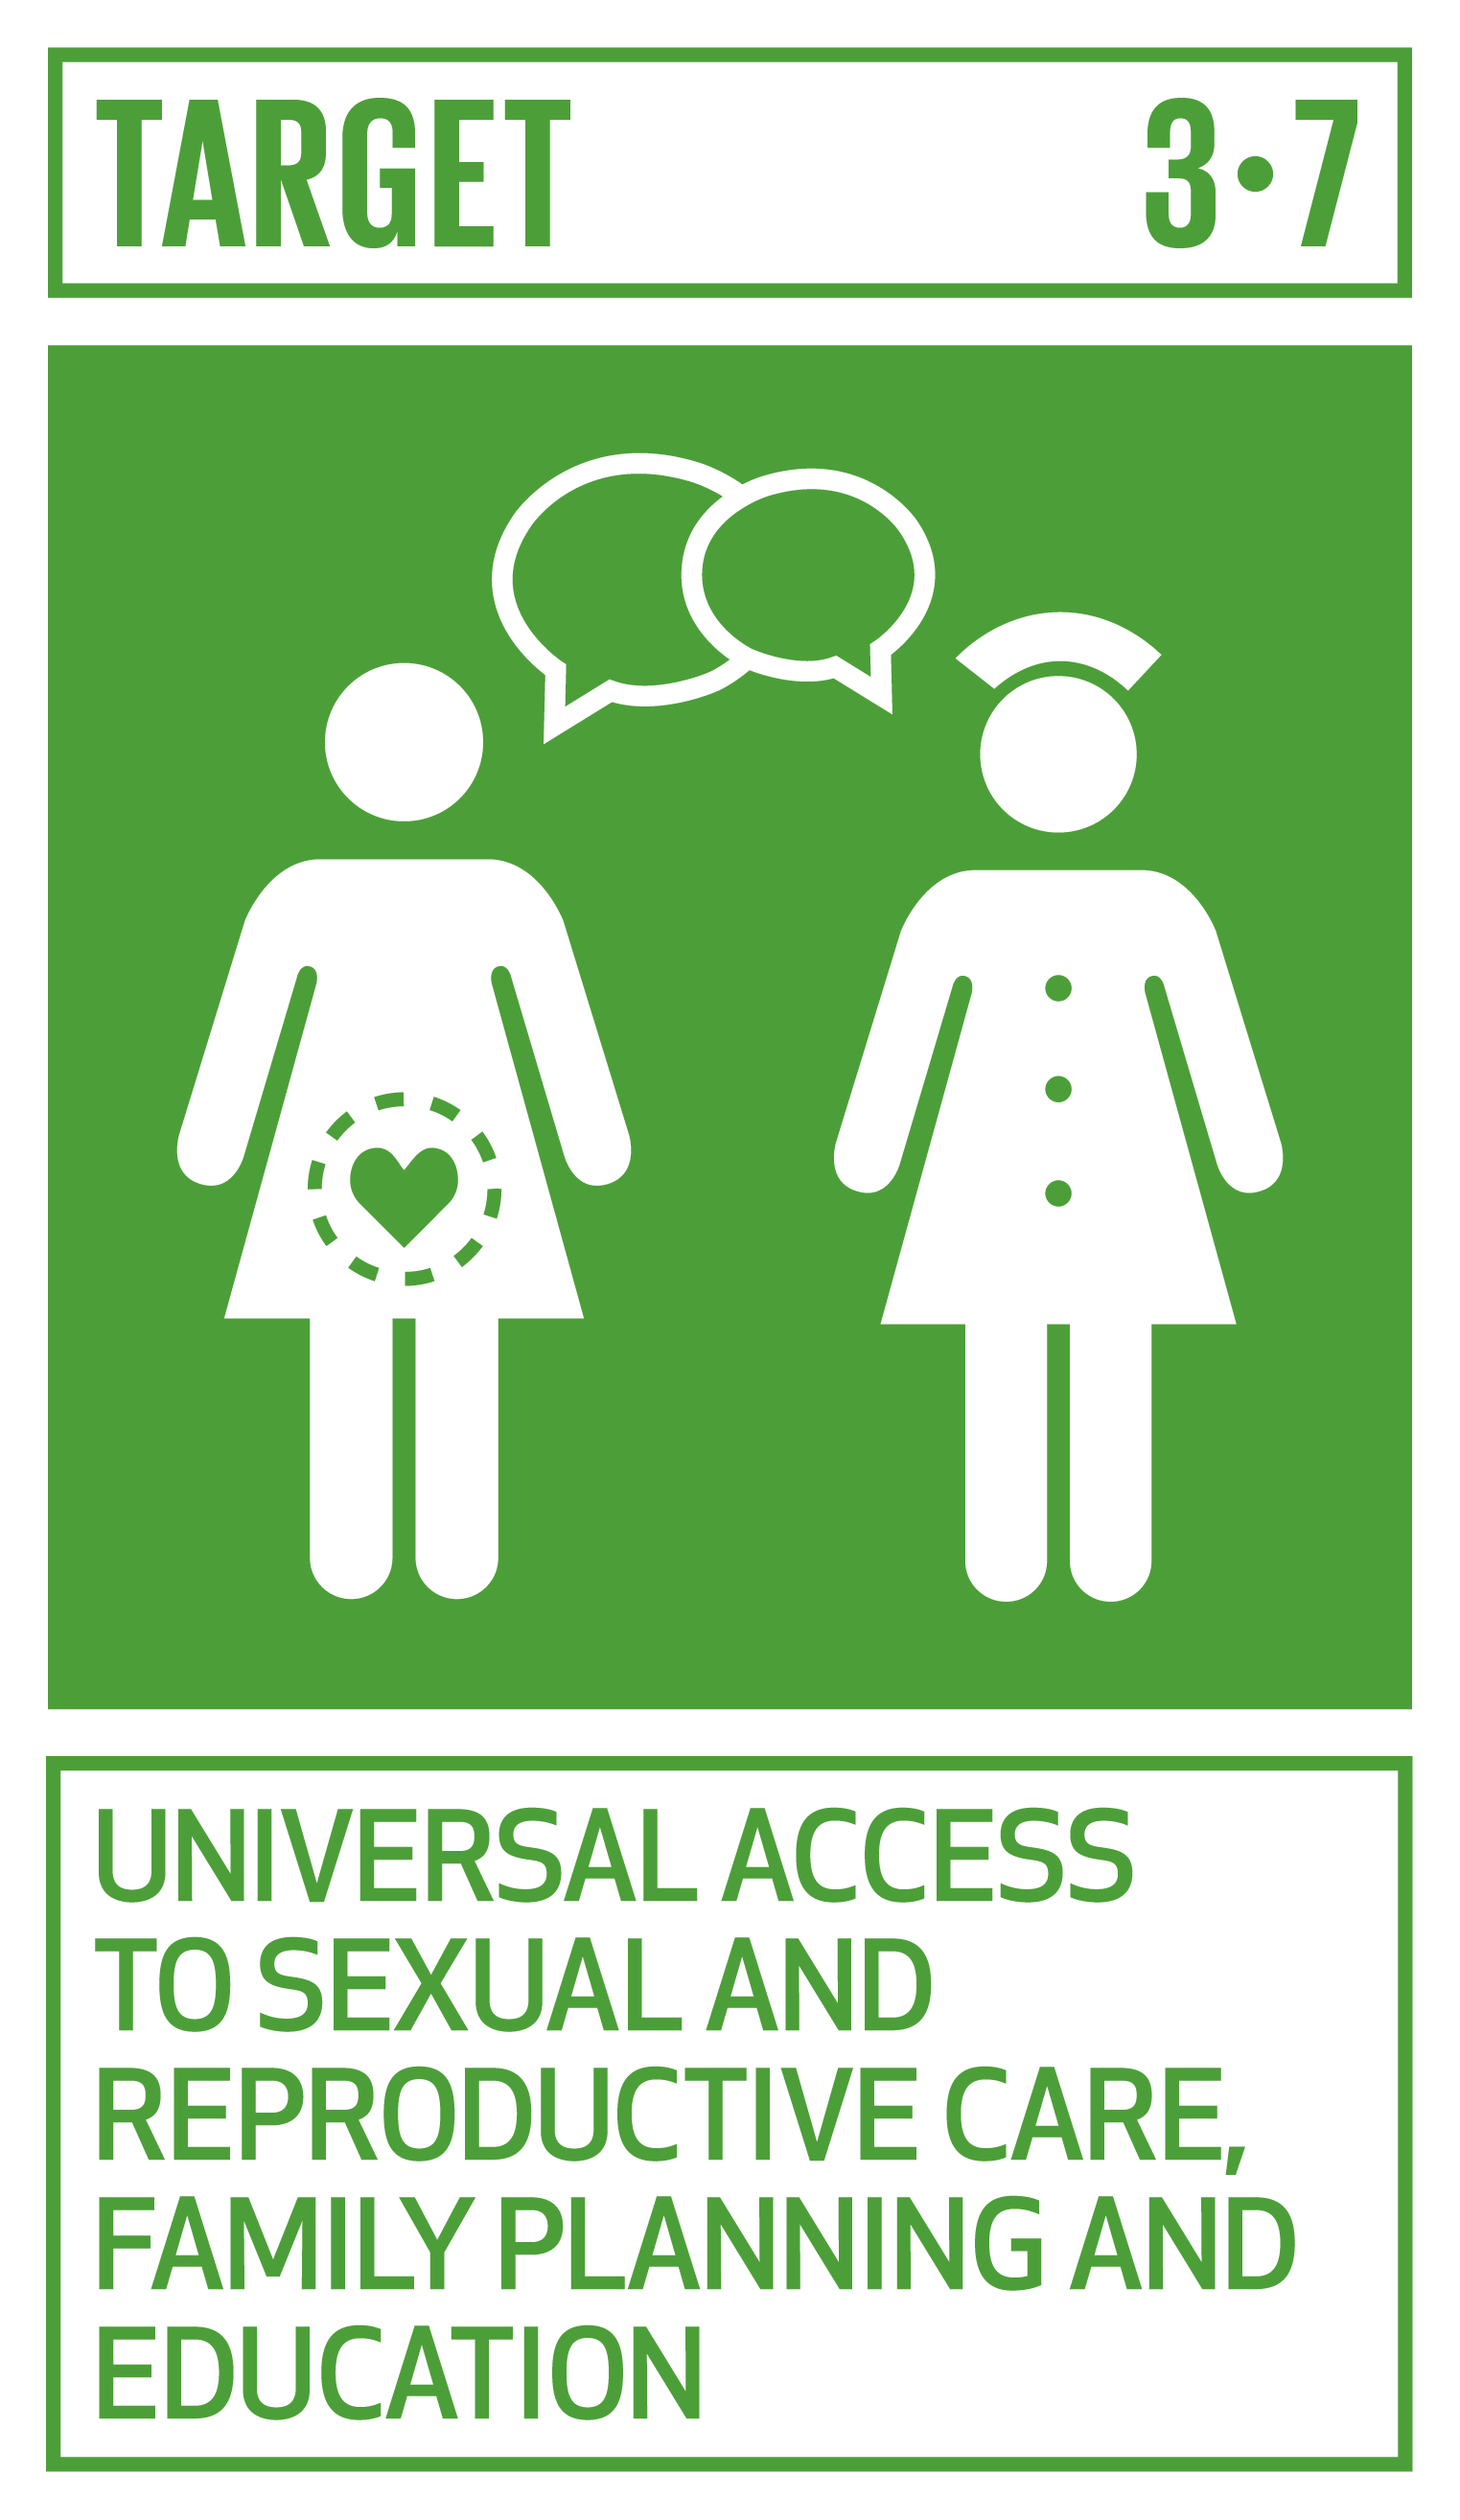 Goal,target,永續發展目標SDGs3目標3.7 普遍獲得性保健和生殖保健，計劃生育和教育